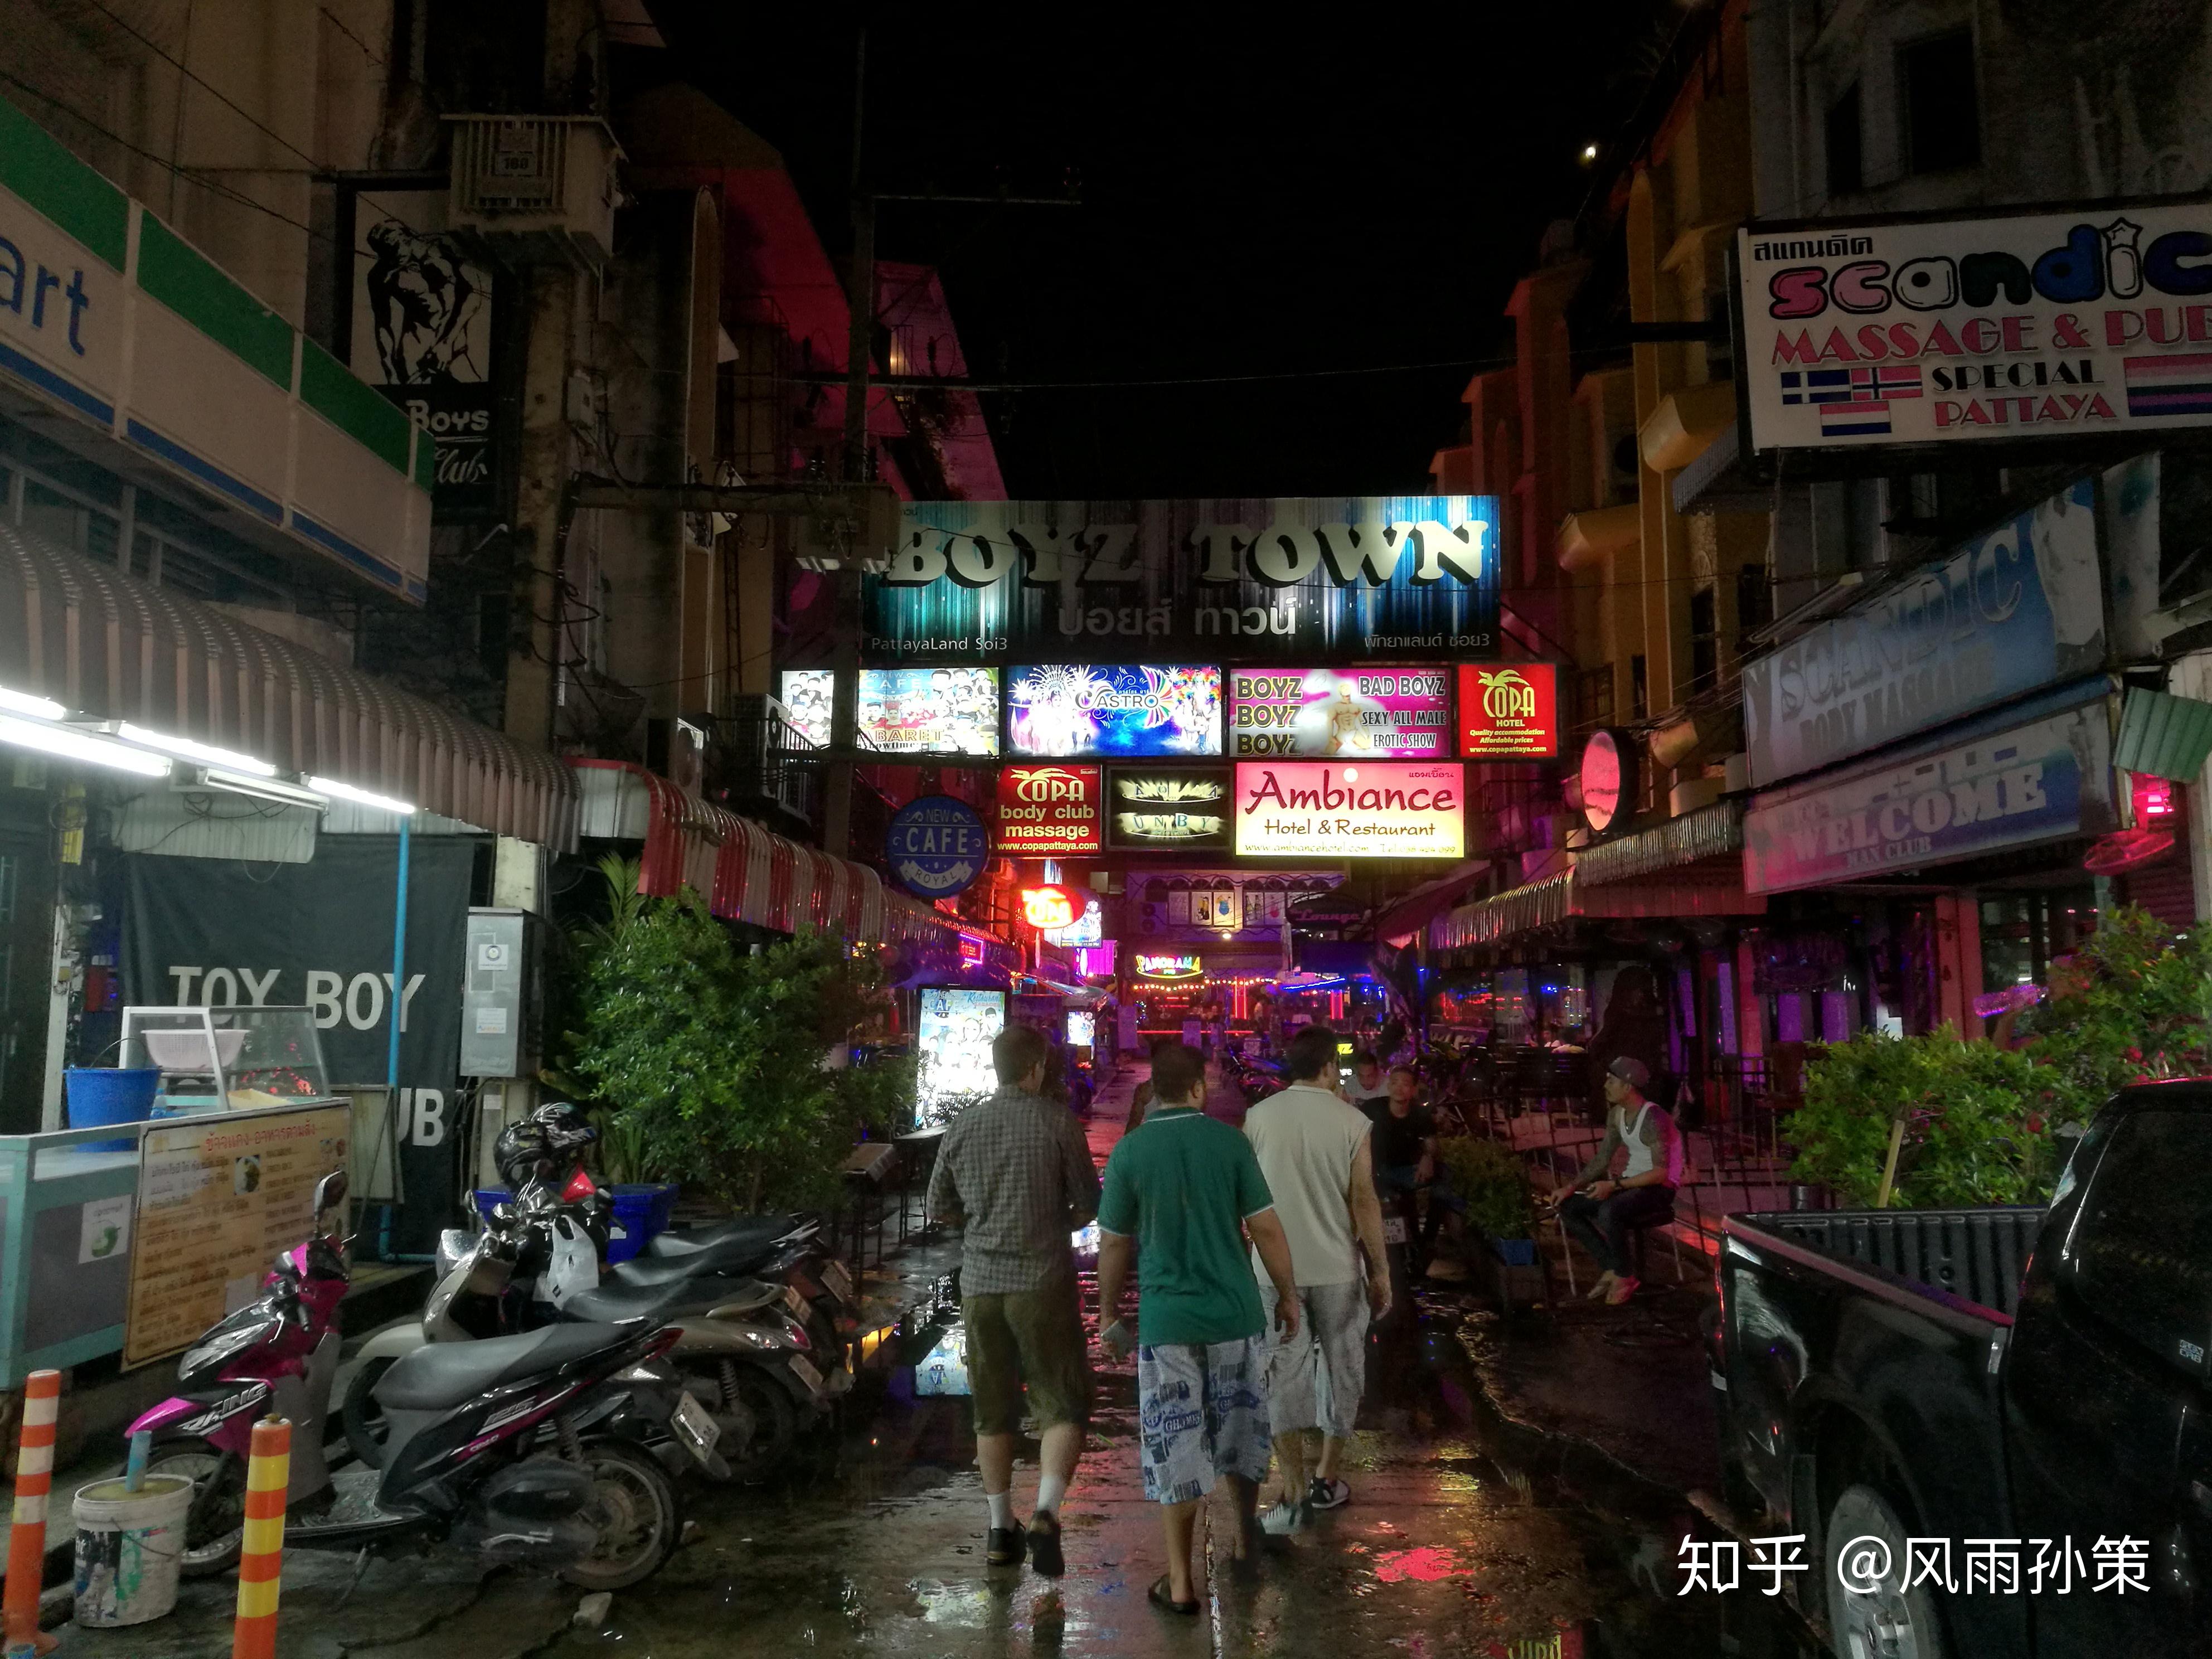 探秘泰国芭提雅步行街 声色犬马号称“男人天堂”